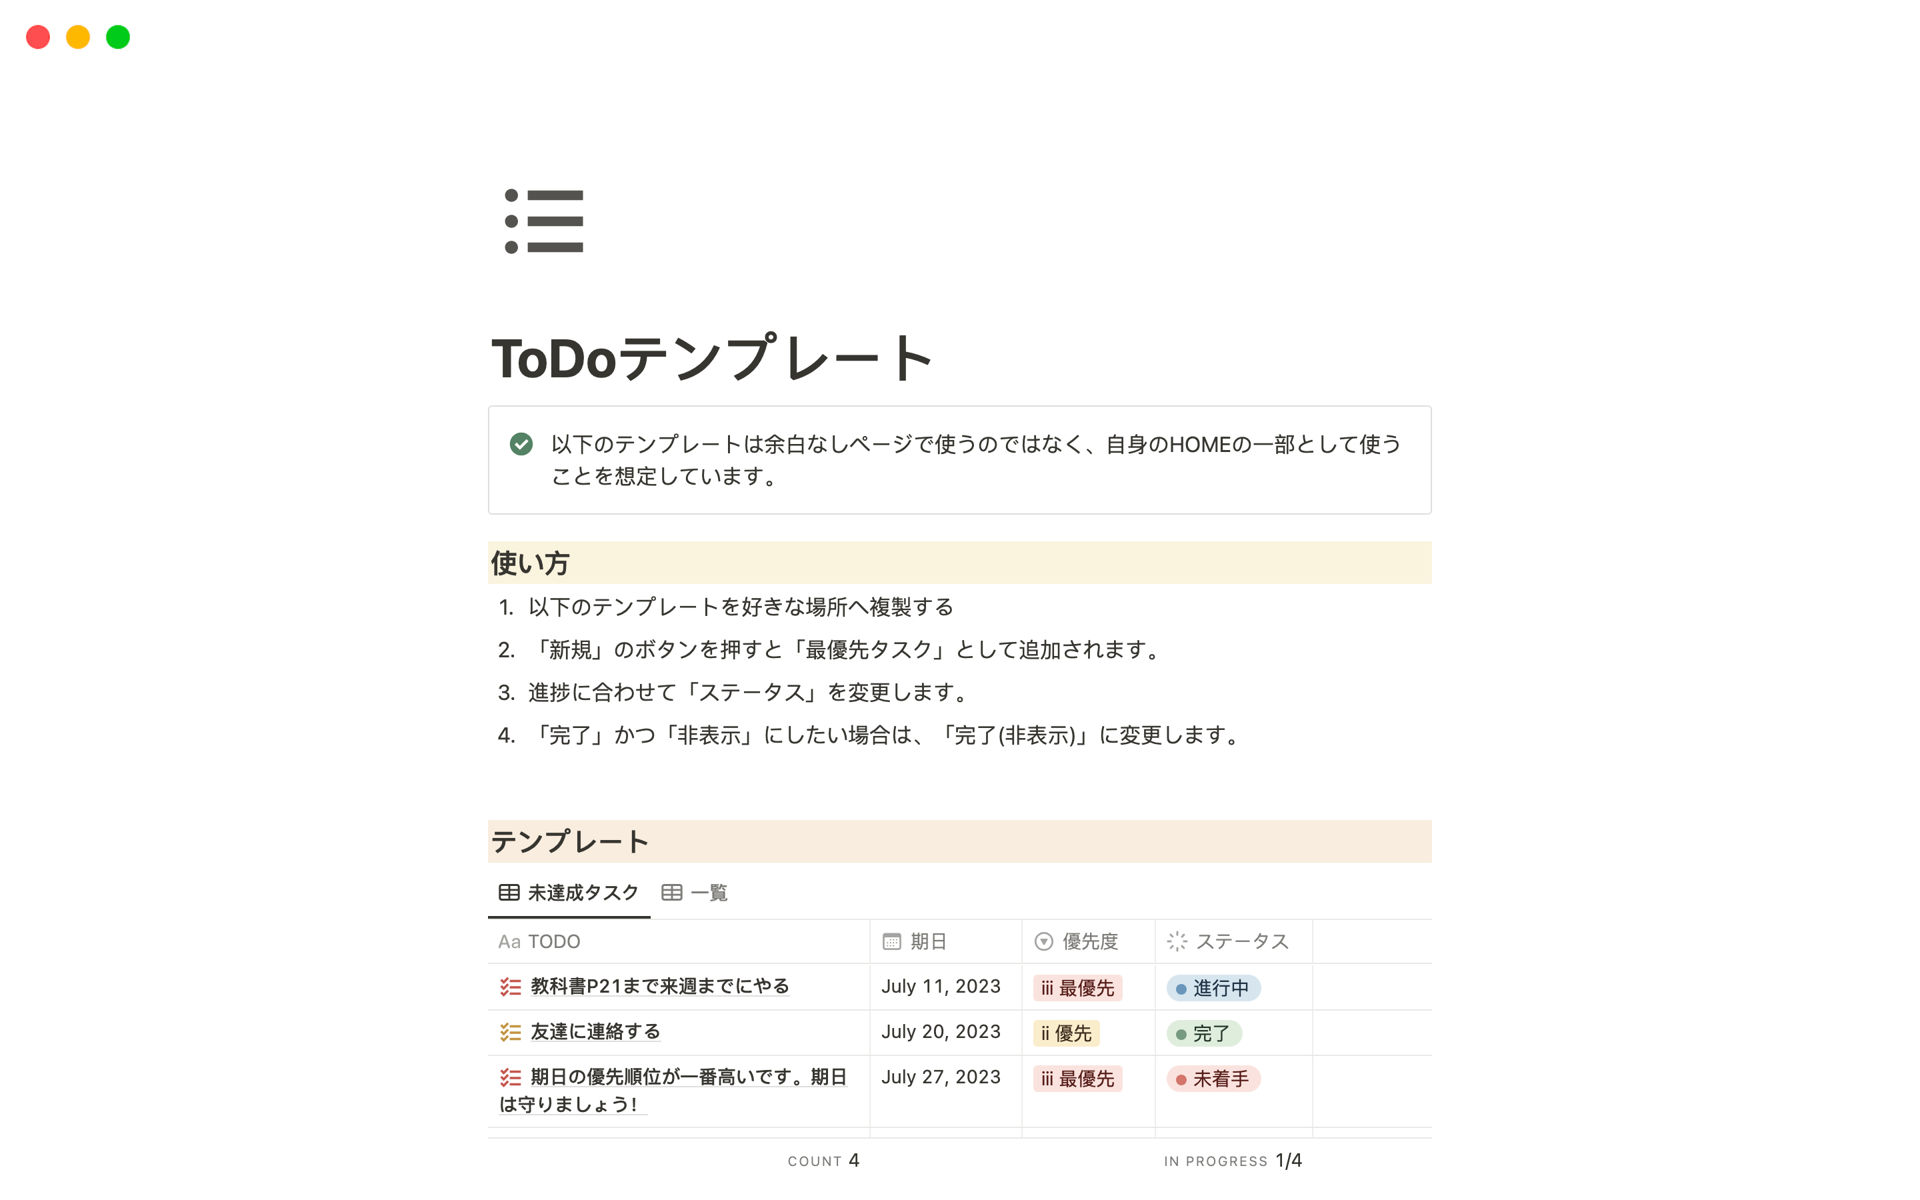 Vista previa de una plantilla para 個人用ToDoリスト